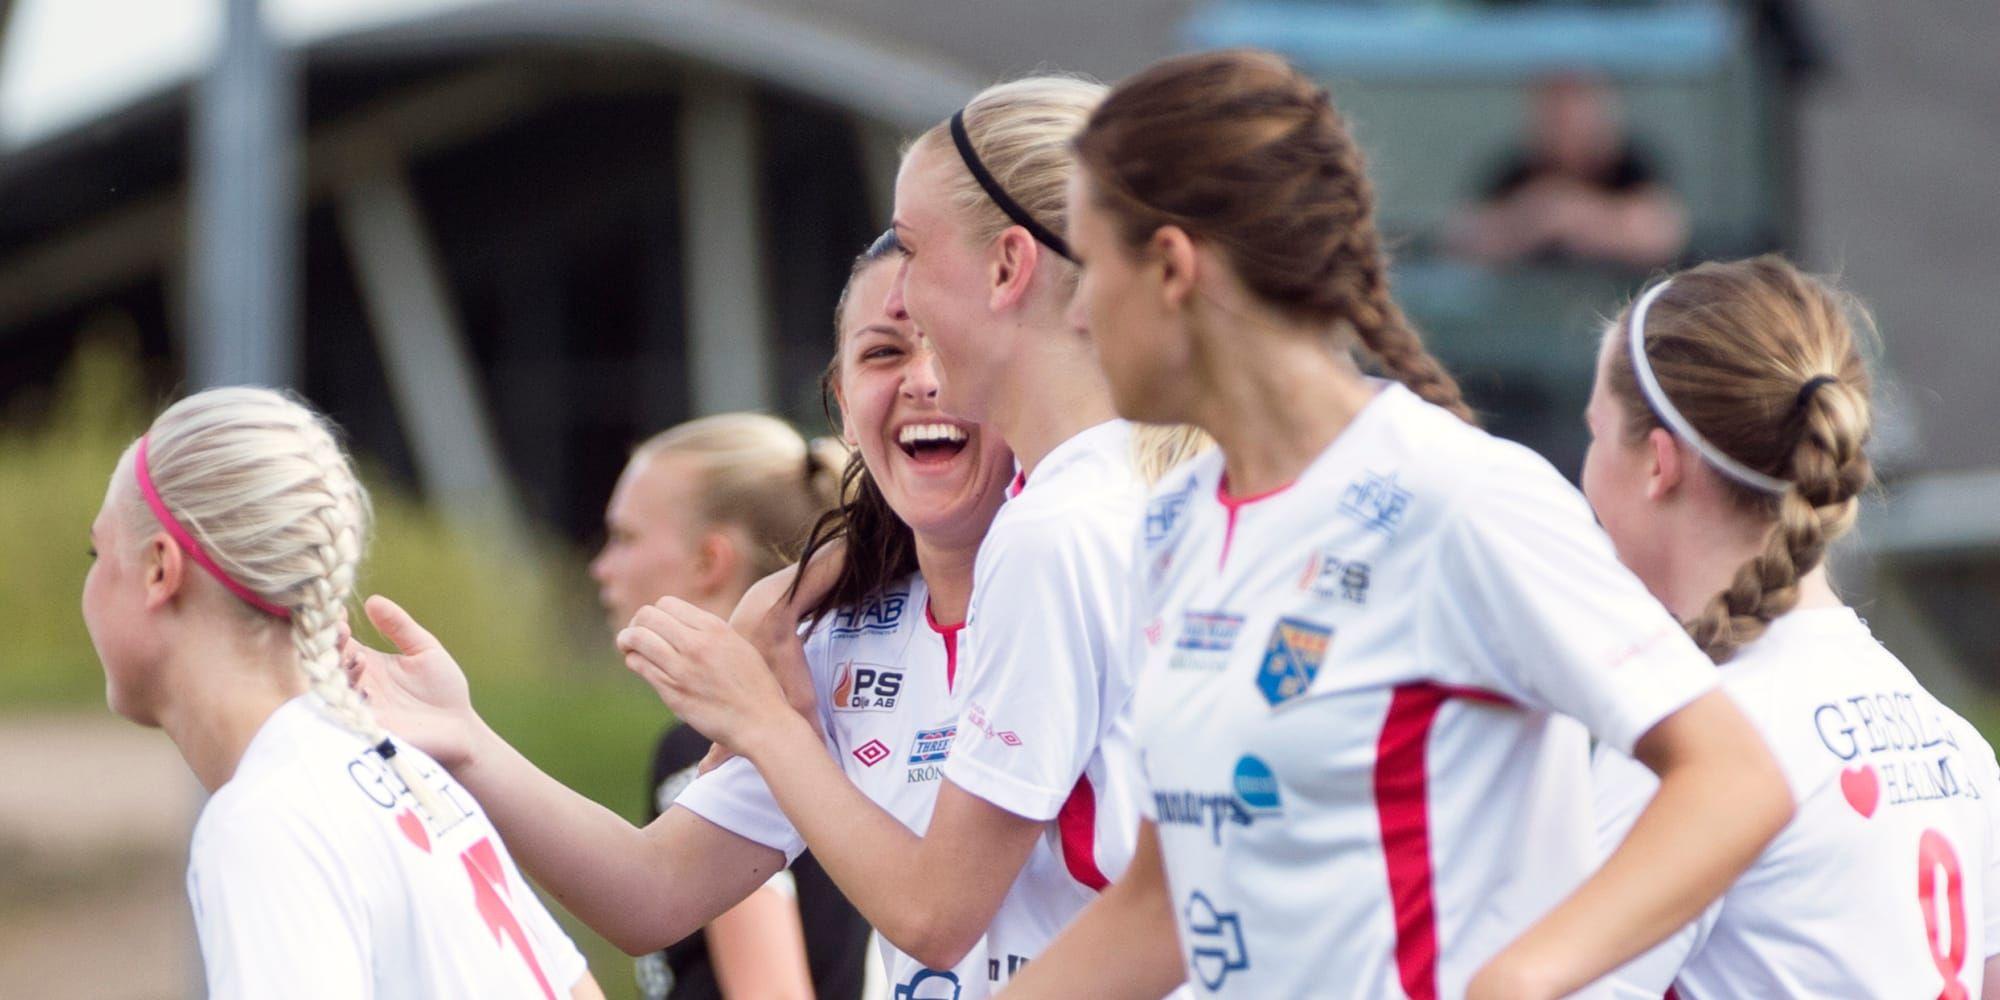 Halmiajubel. Emma Nielsen (i mitten) gjorde målet när Halmia vann på bortaplan för första gången under den här säsongen. Bilden är från en tidigare match.